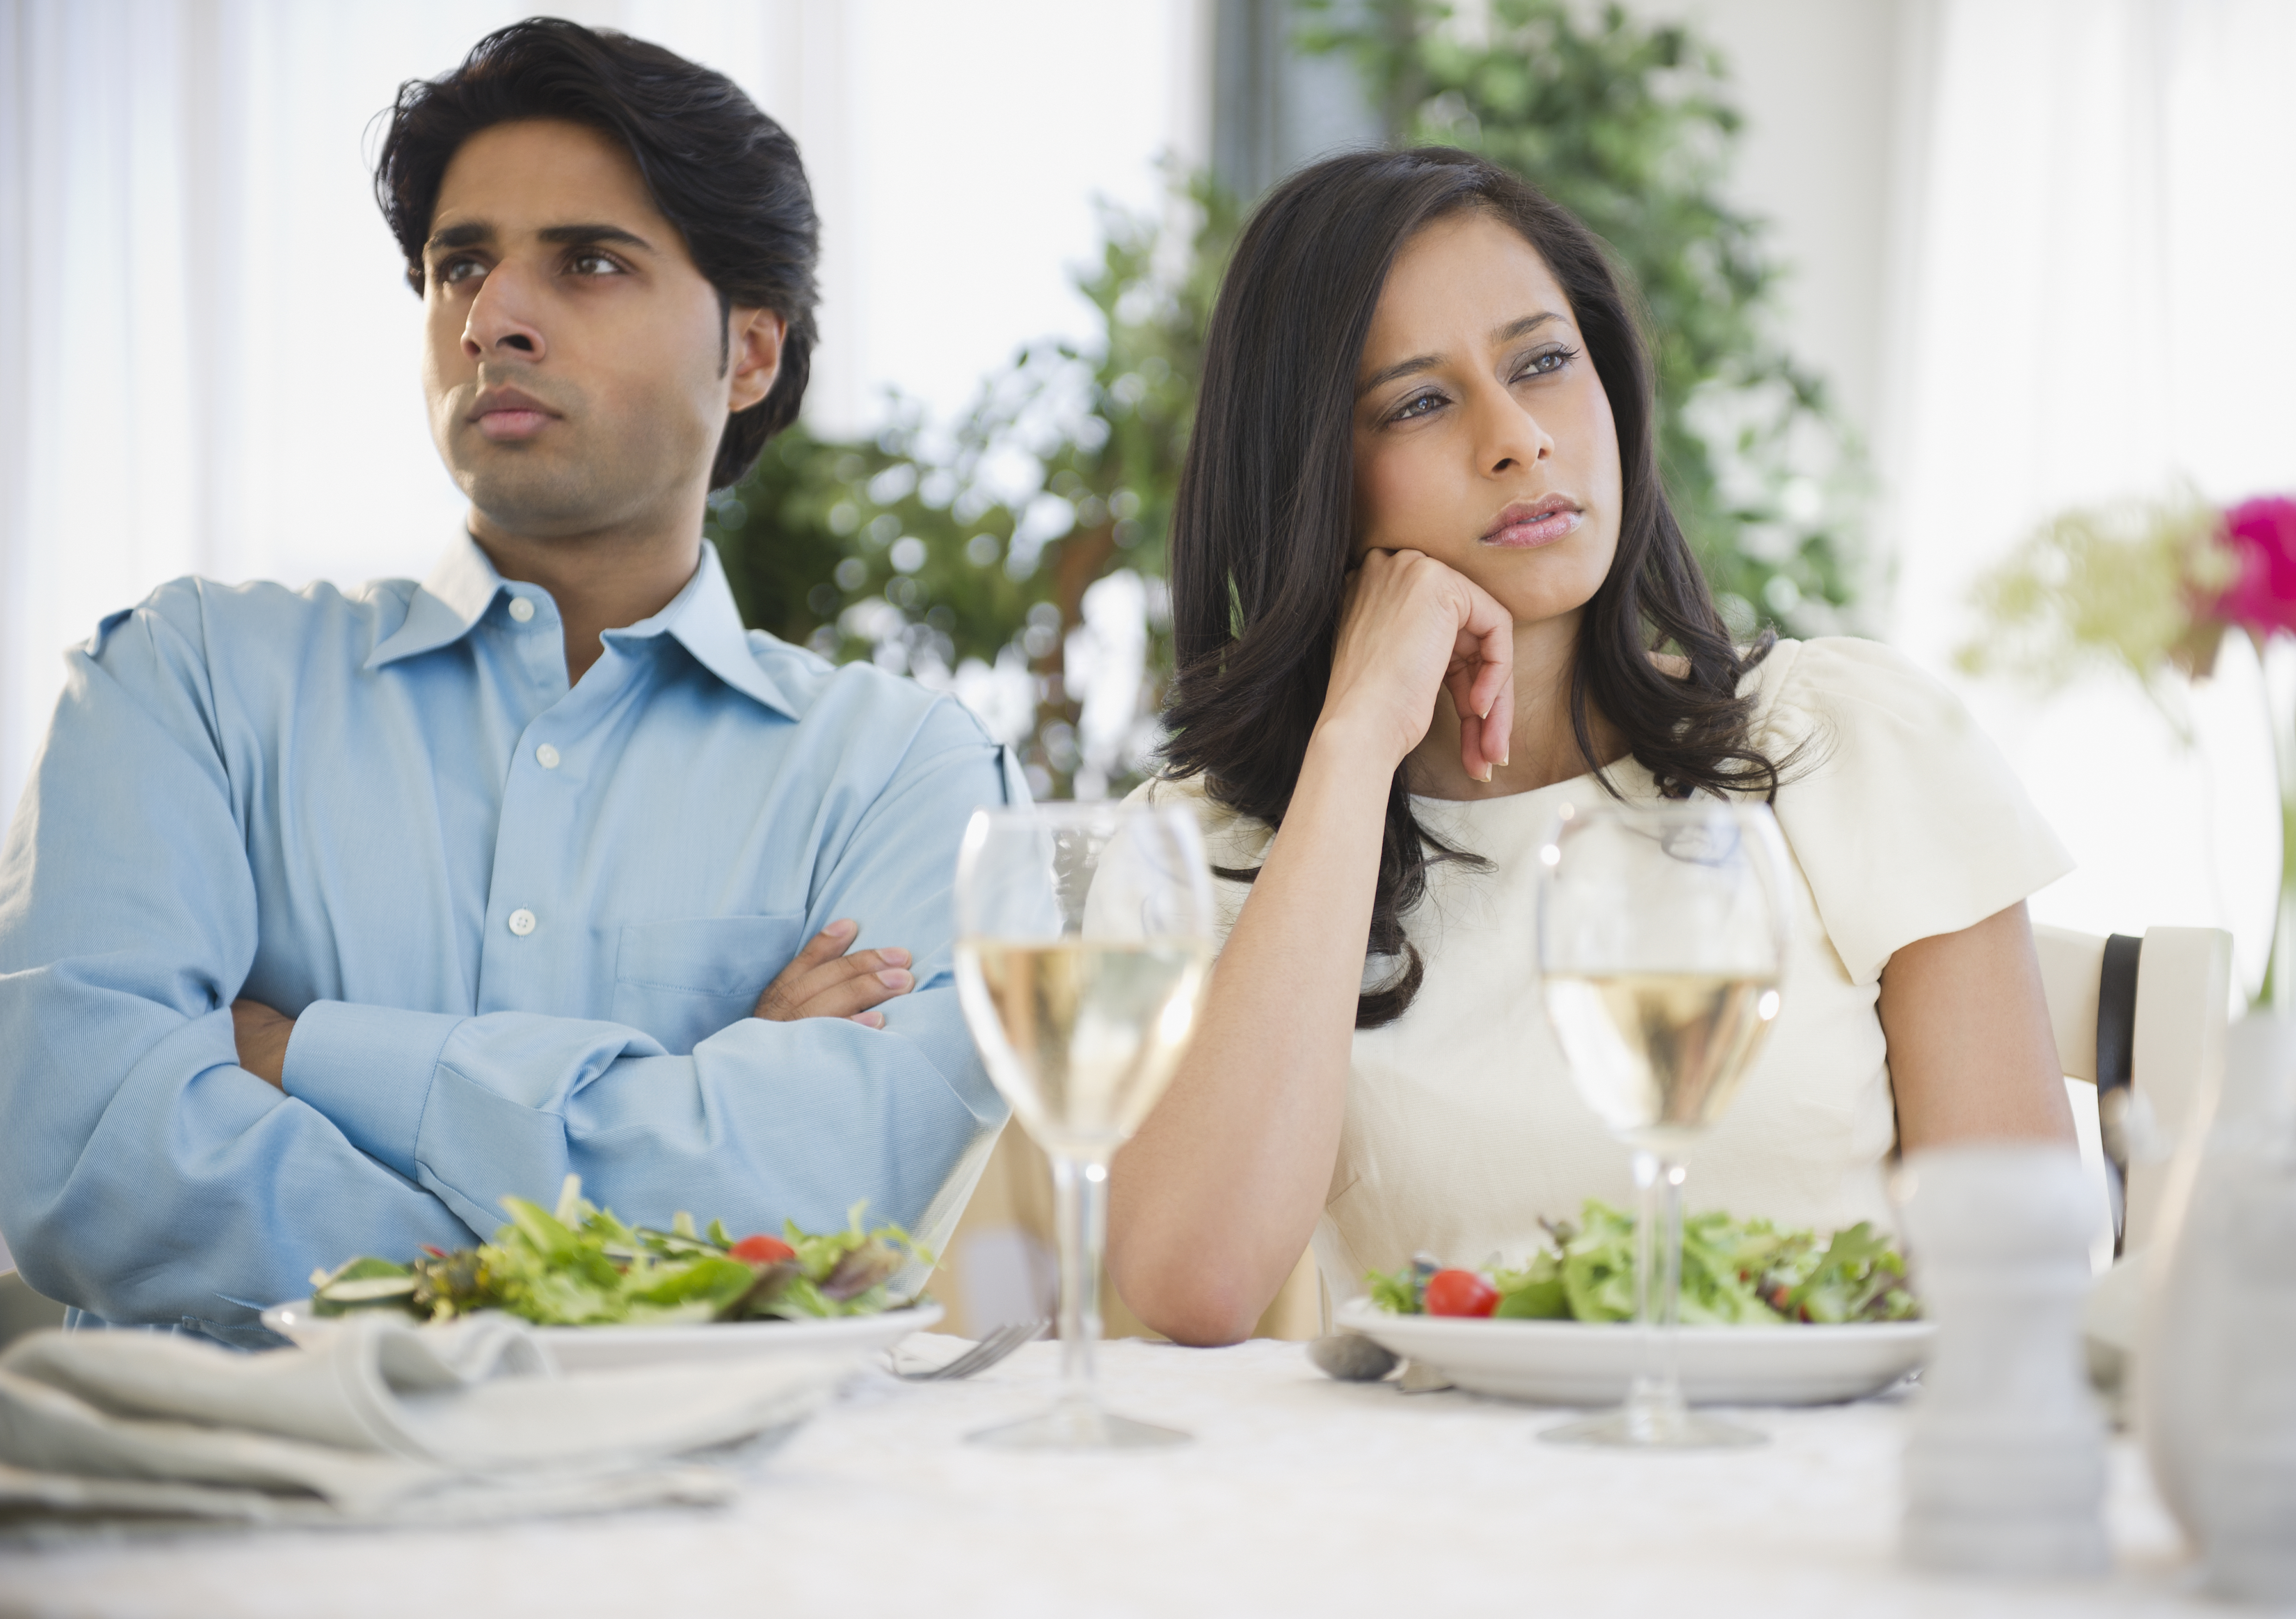 Un couple contrarié dîne ensemble | Source : Getty Images